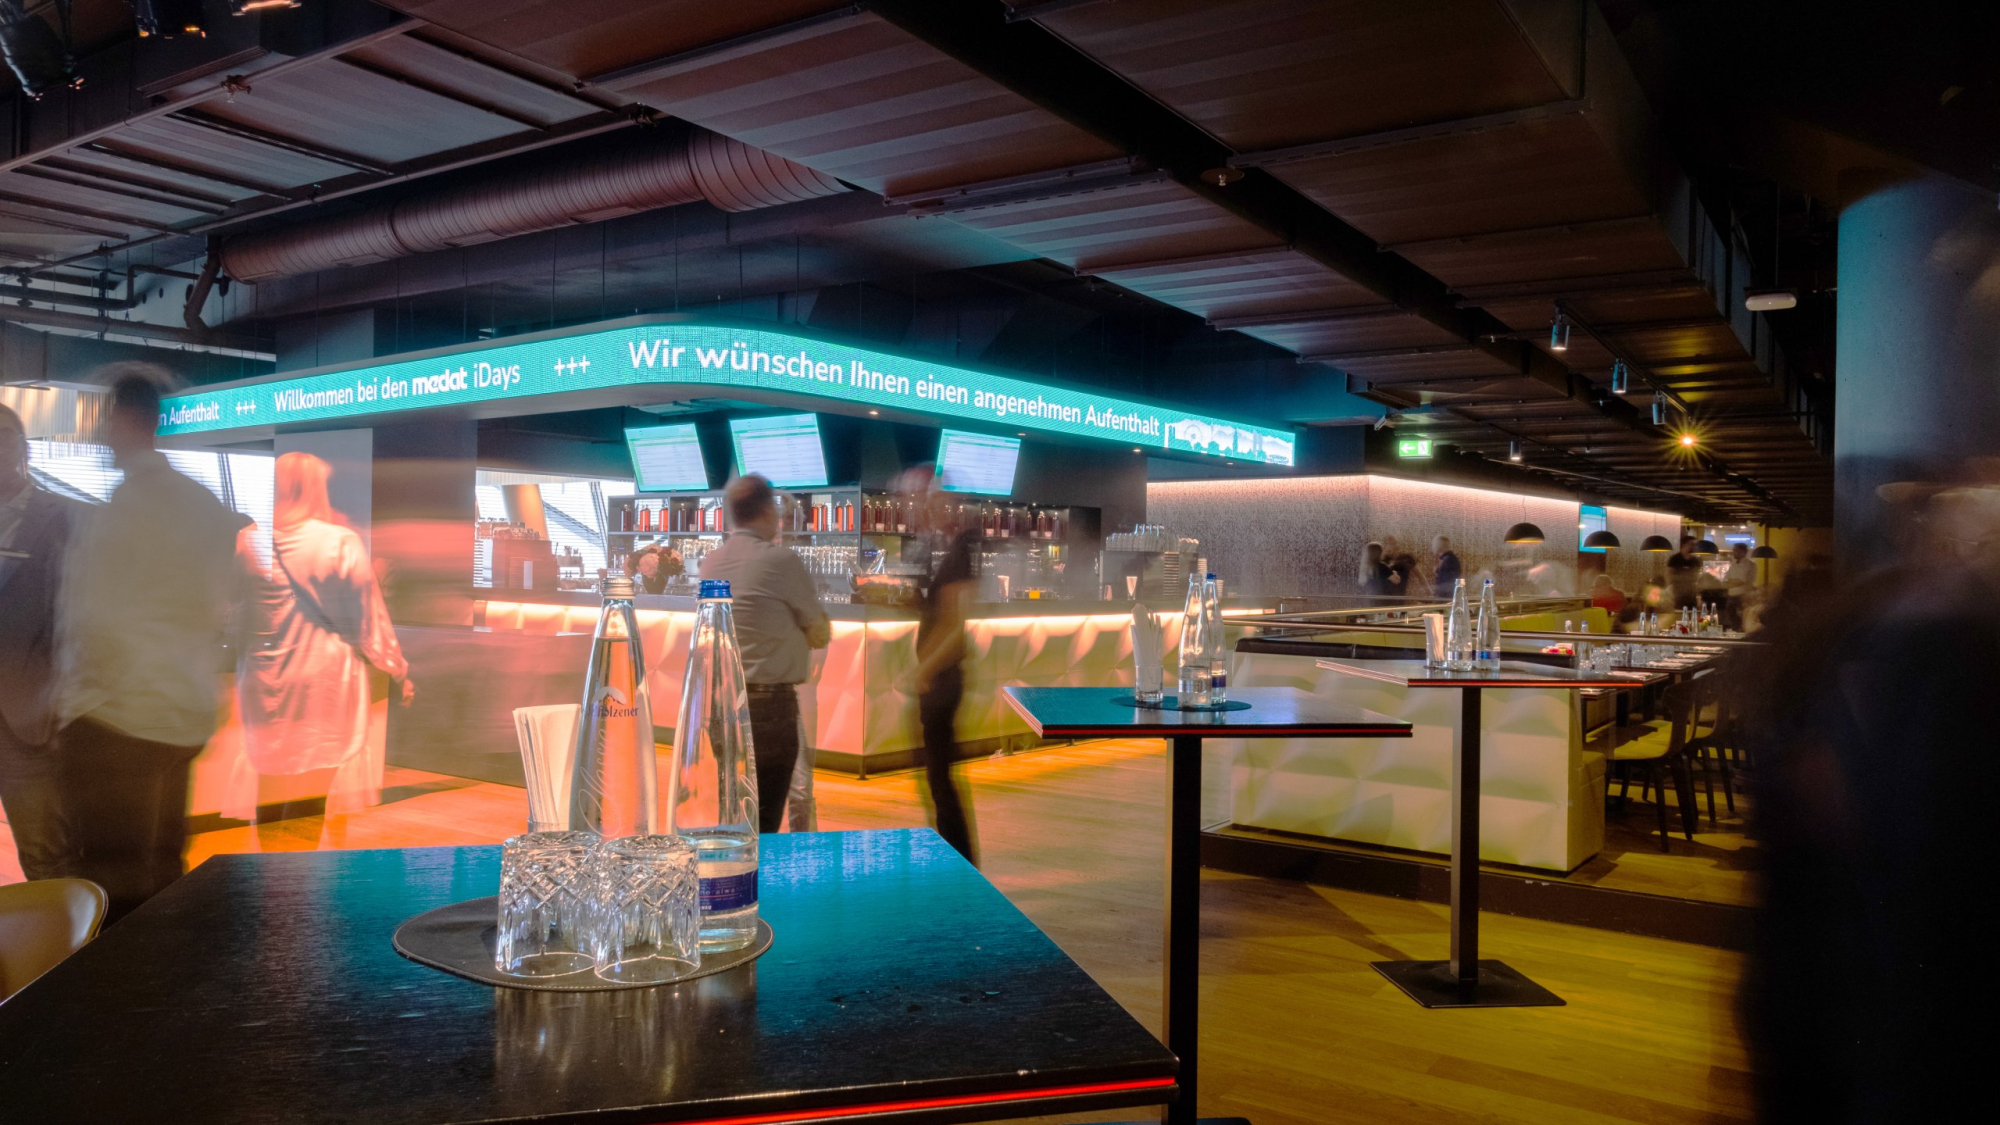 Langzeitaufnahme der Säbener Lounge in der Allianz Arena in München. Im Hintergrund die Bar und im Vordergrund 3 Stehtische mit Wasserflaschen und Gläsern.